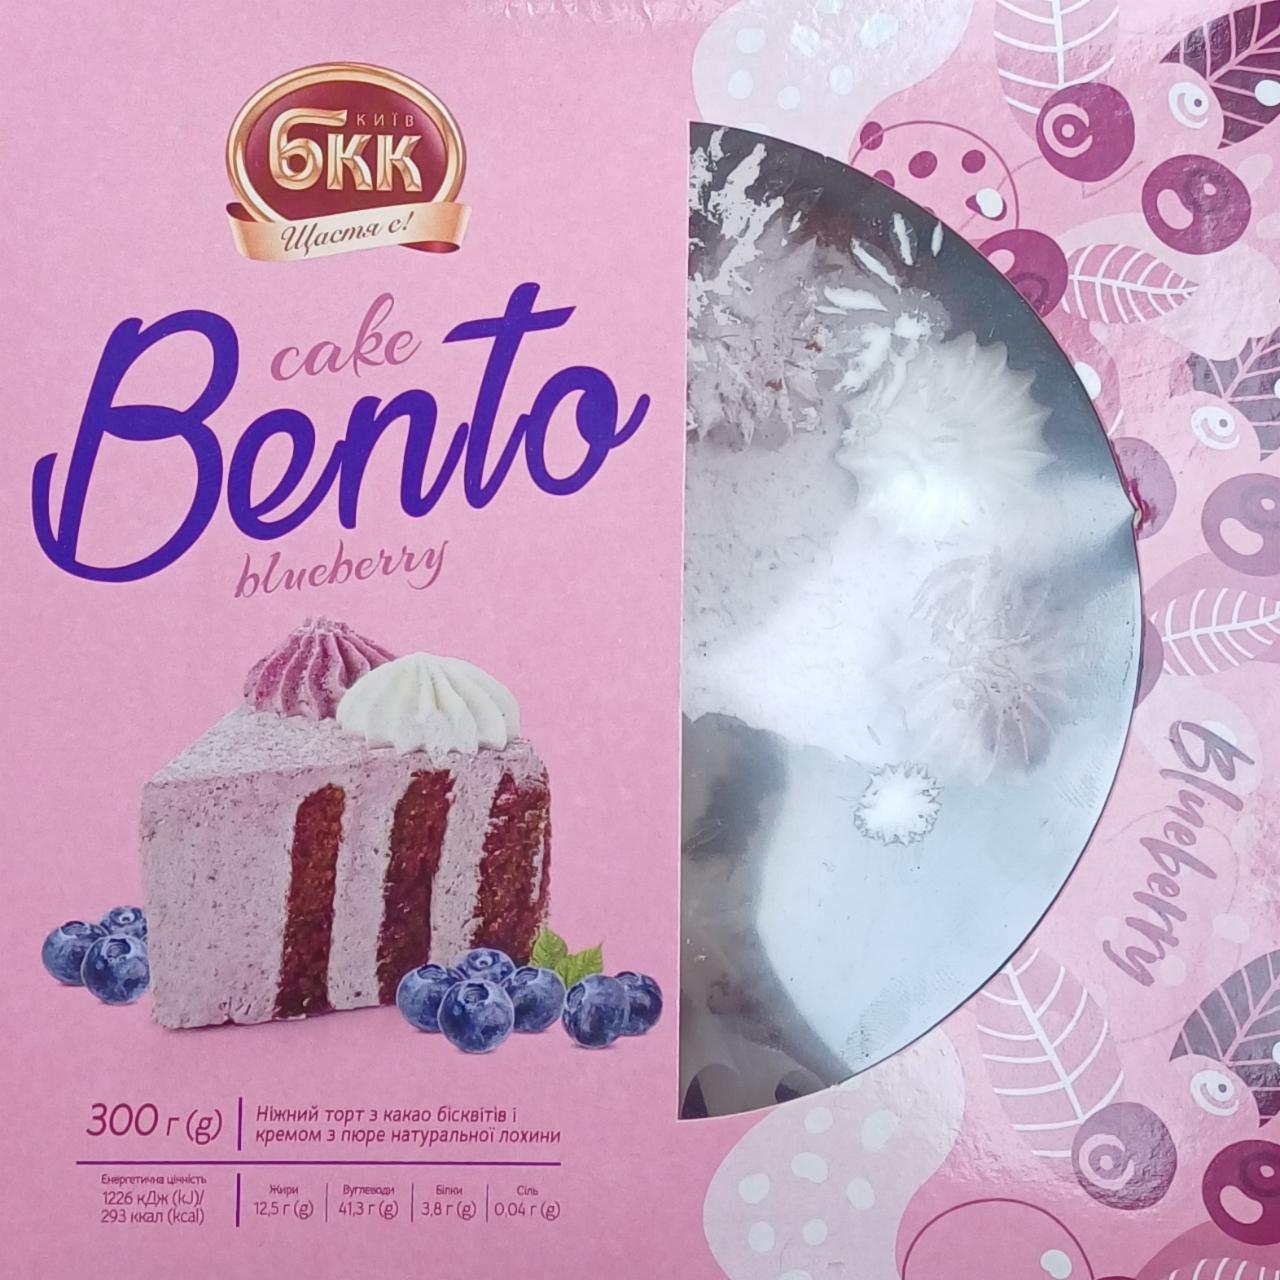 Фото - Бенто-торт Лохина Bento Cake Blueberry БКК